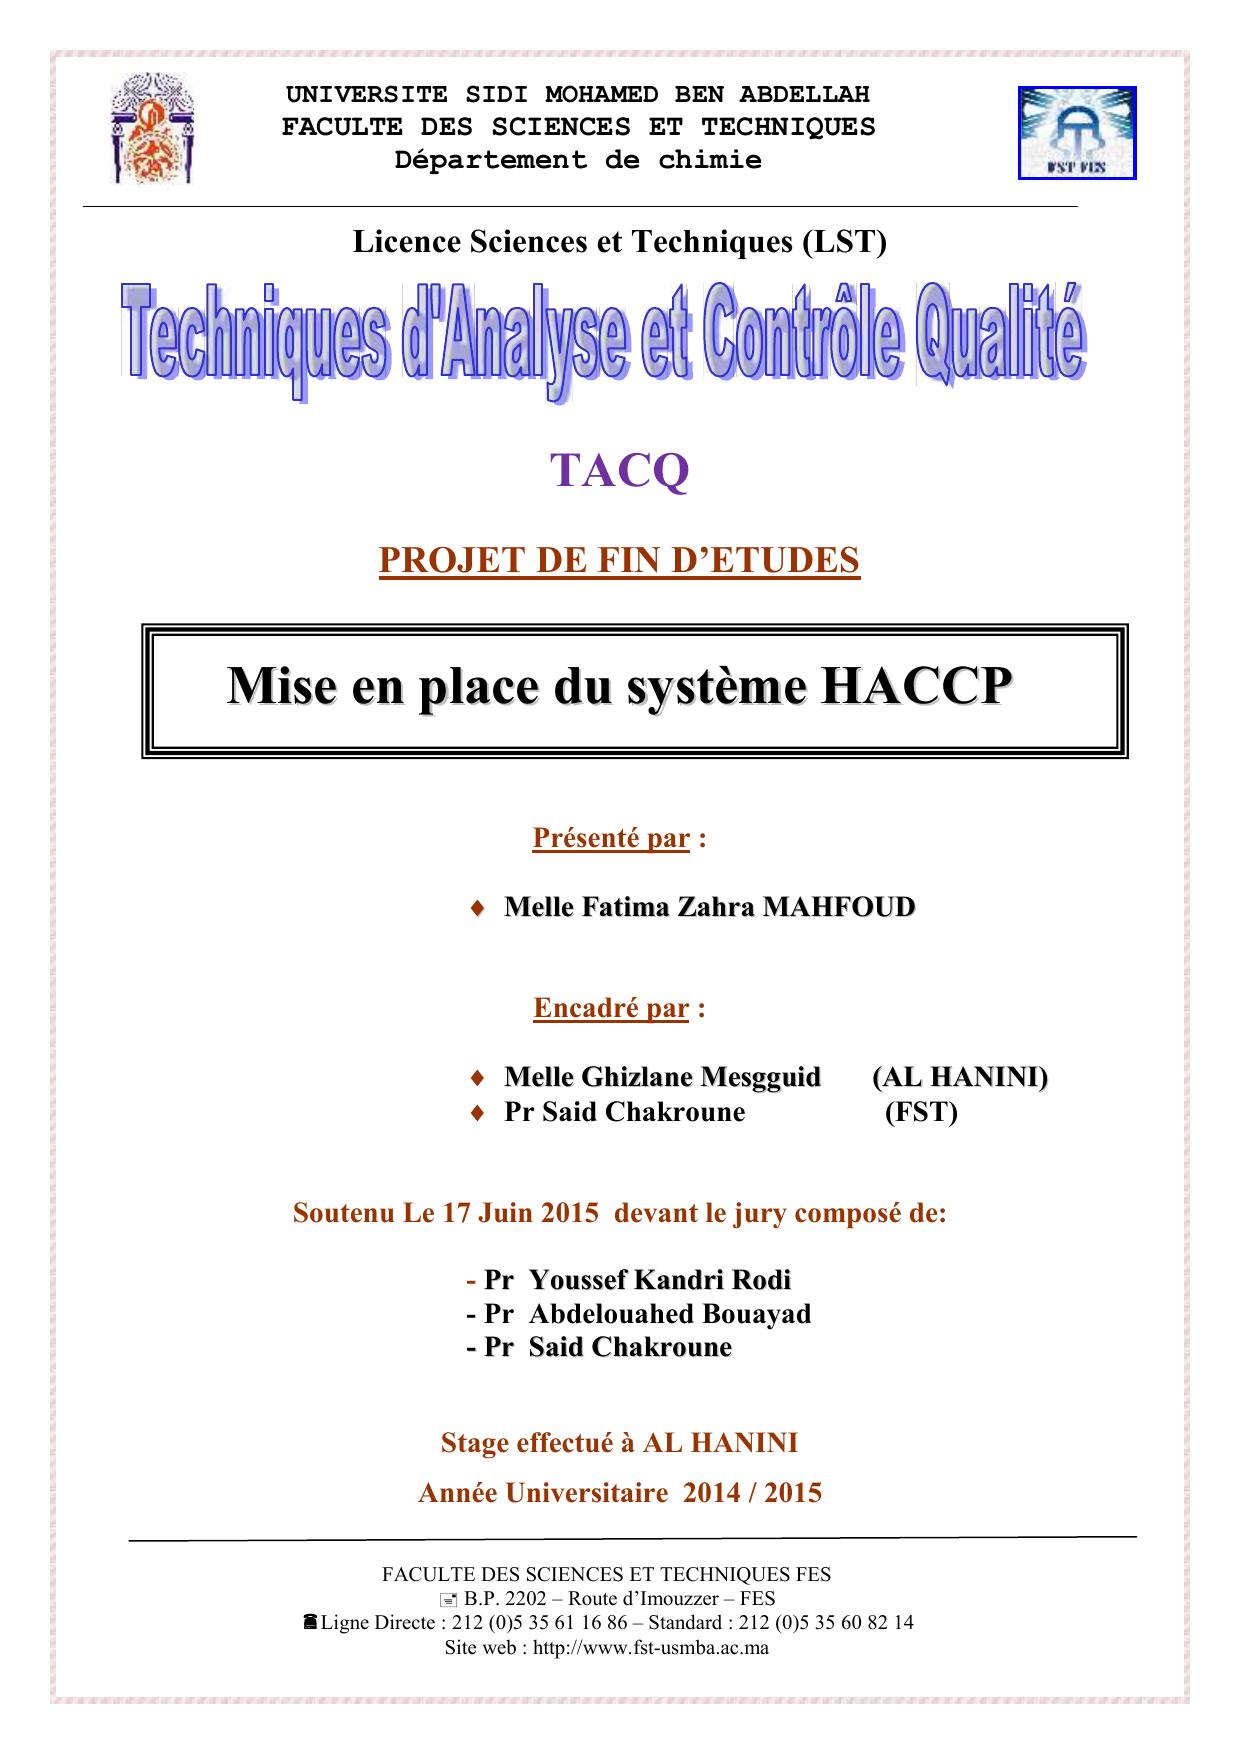 Mise en place du système HACCP